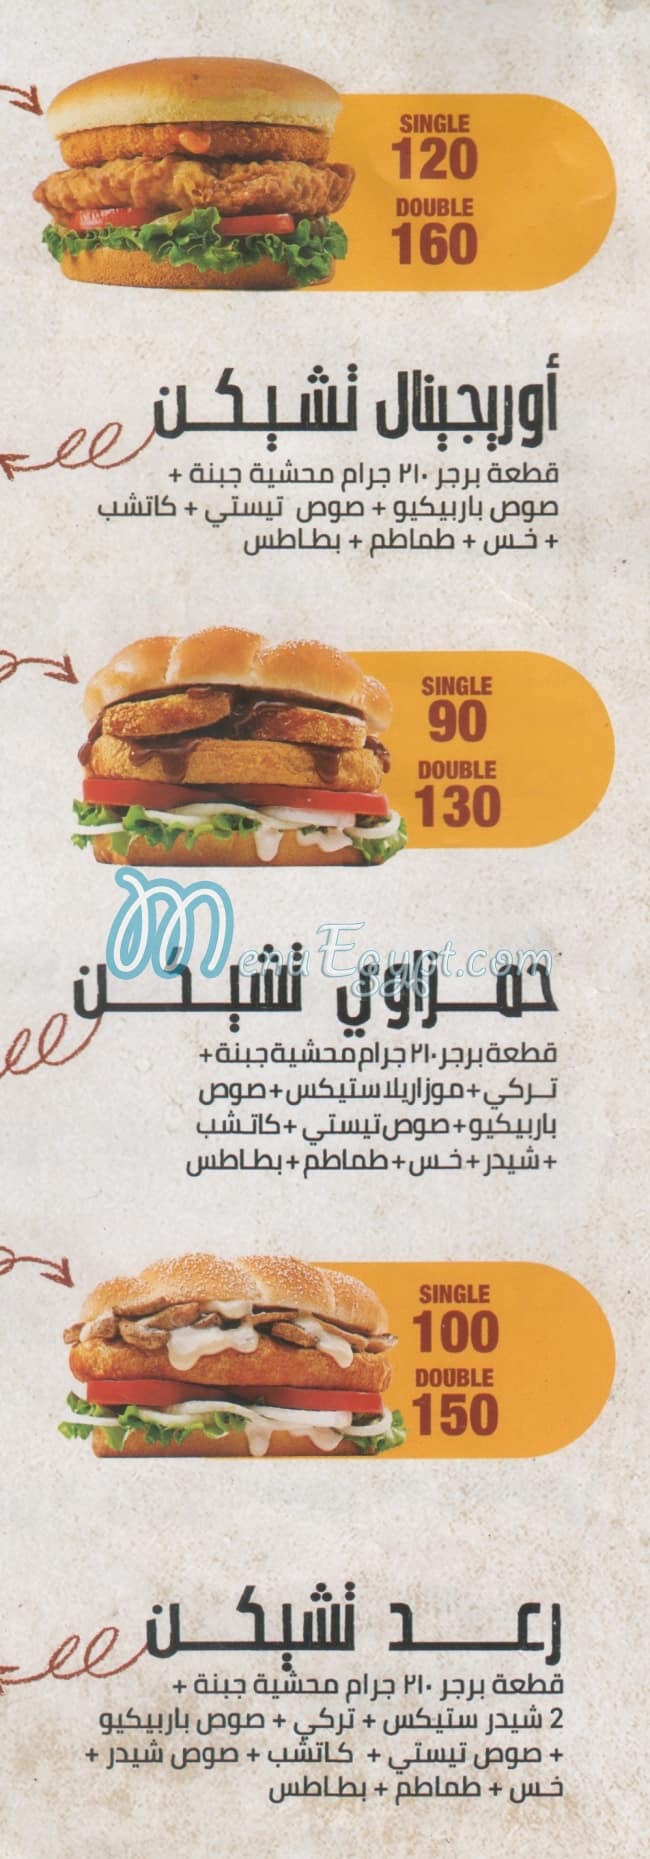 Hamzawy Burger delivery menu